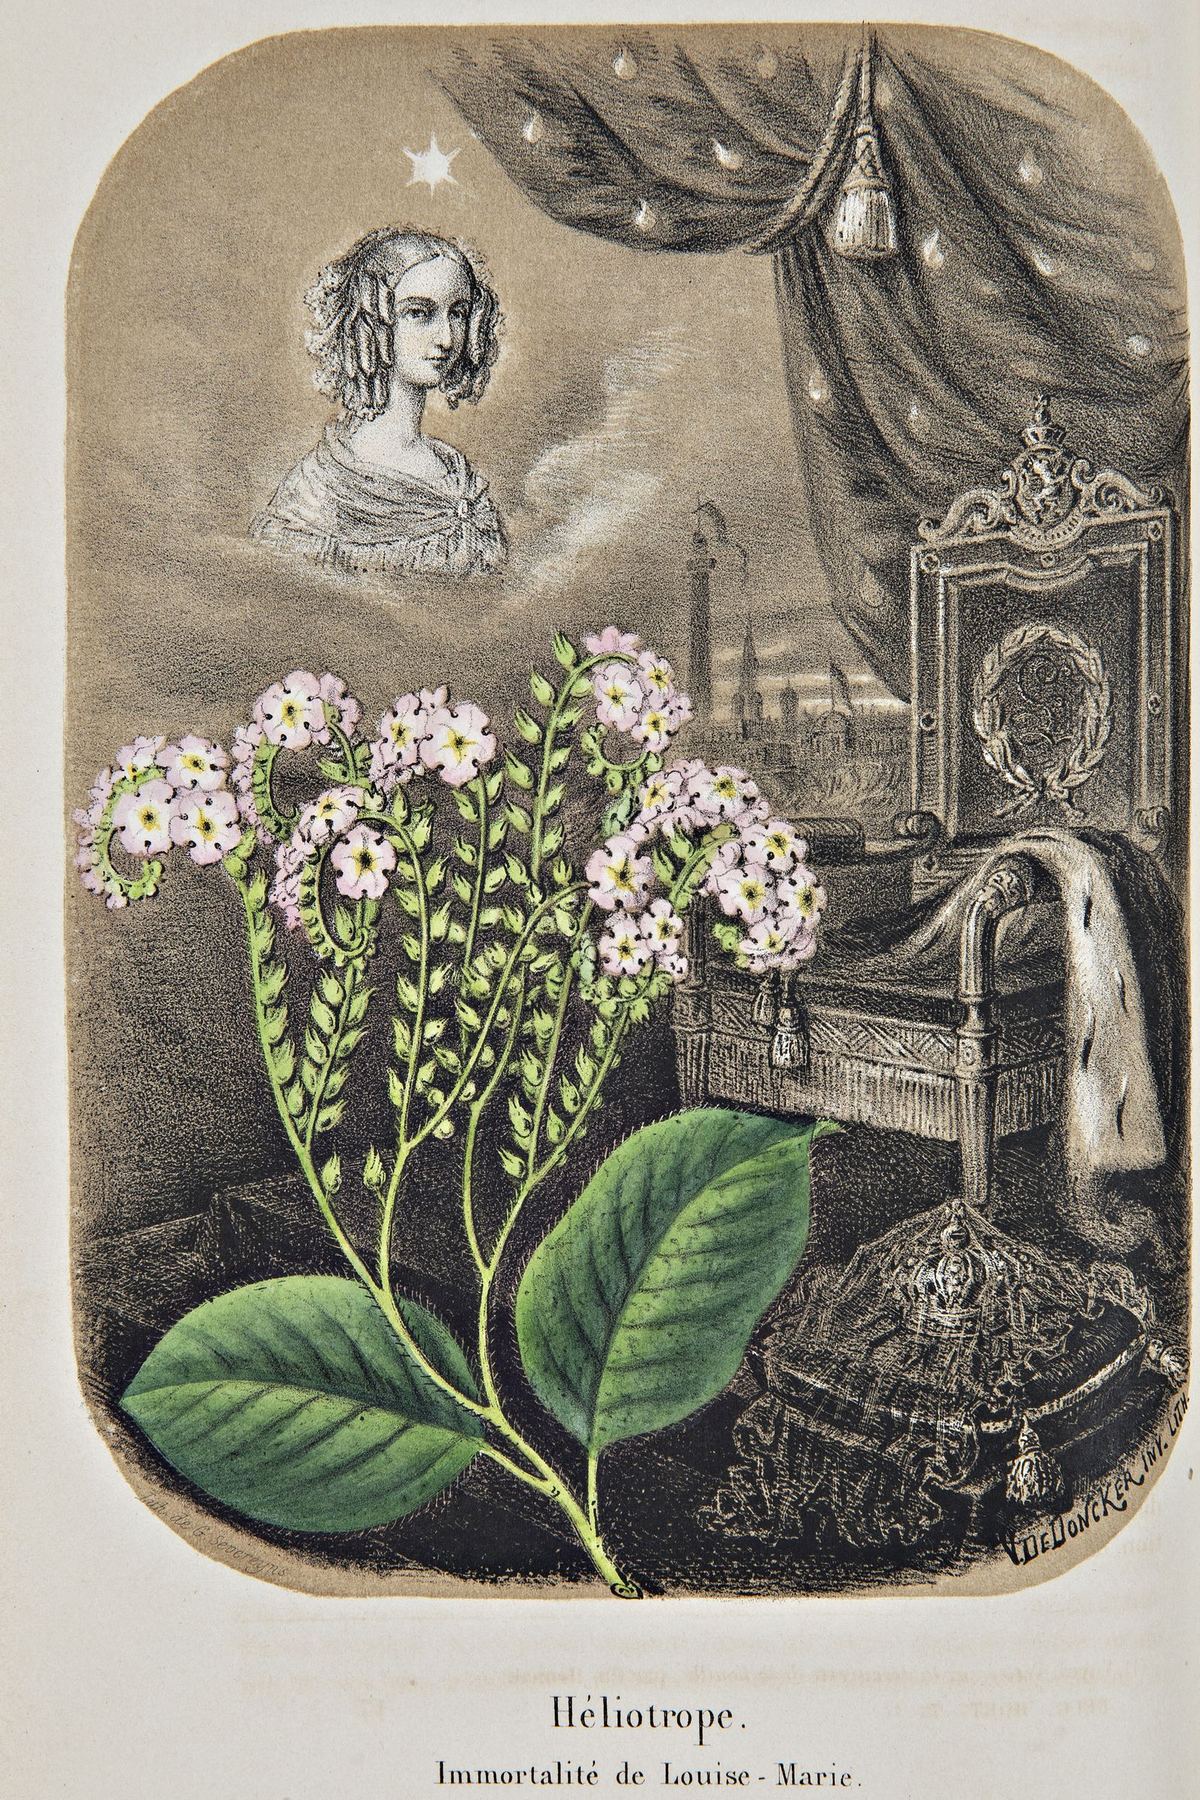 Louise d'Orleans mmagine di Luisa d'Orléans immagine tratta dal volume di Morren, Charles ‒ Morren, Eduard, La Belgique horticole. Journal des jardins, des serres et des champs, Liège 1851-1862.